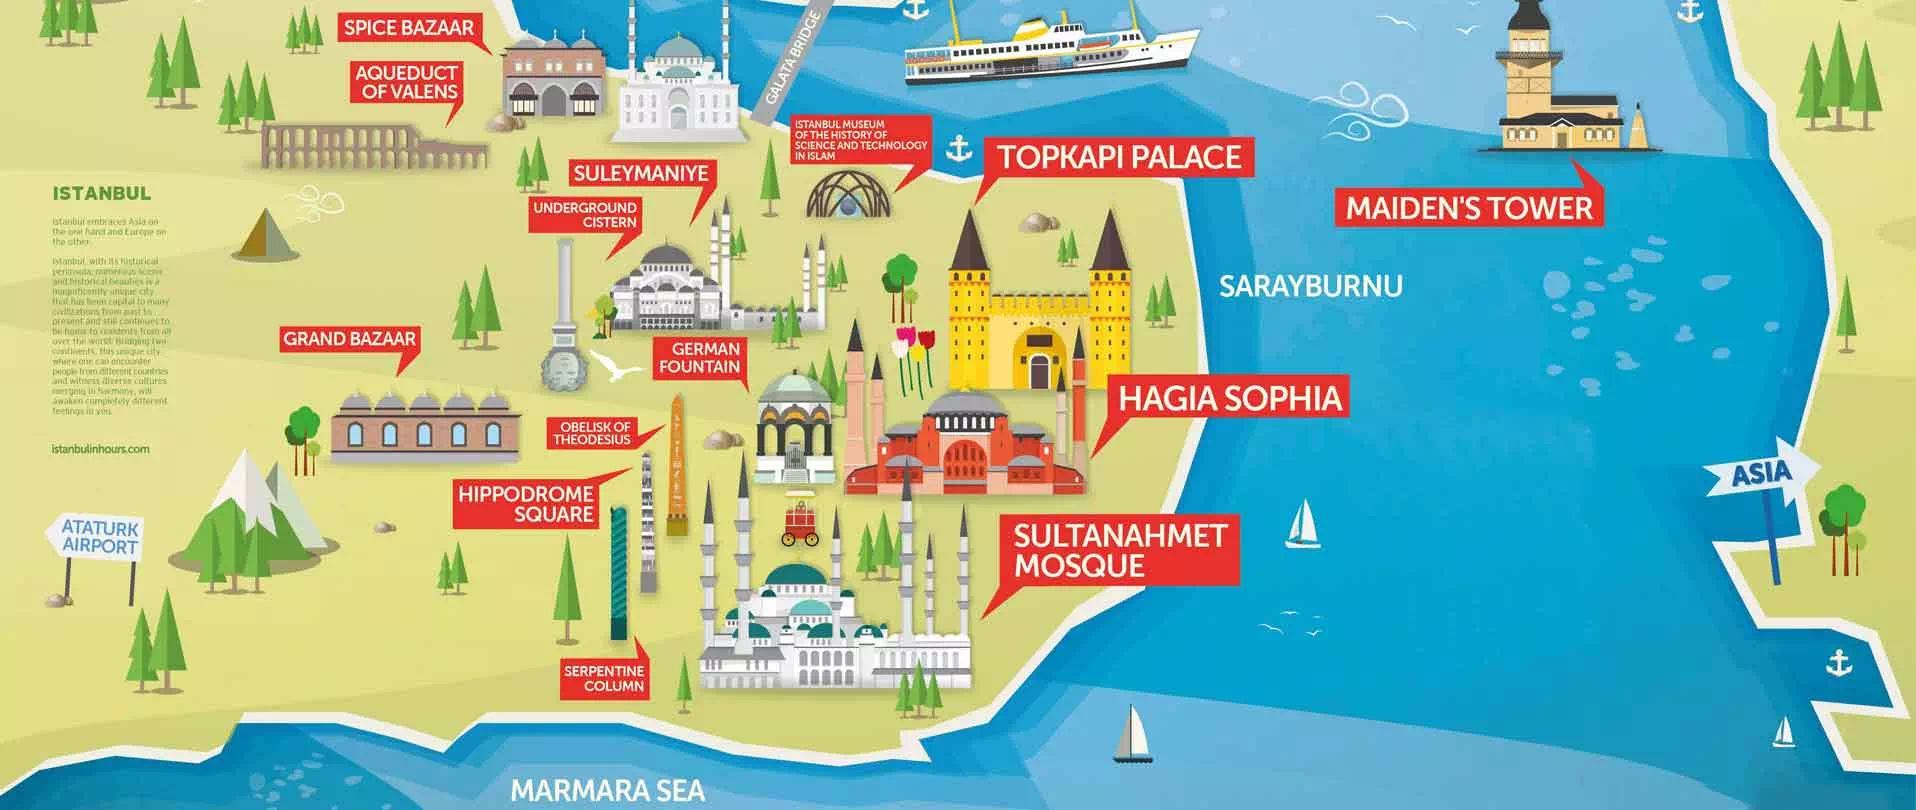 Top Landmarks in Sultanahmet Istanbul map, Top Landmarks in Sultanahmet, Top Historical Places in Sultanahmet